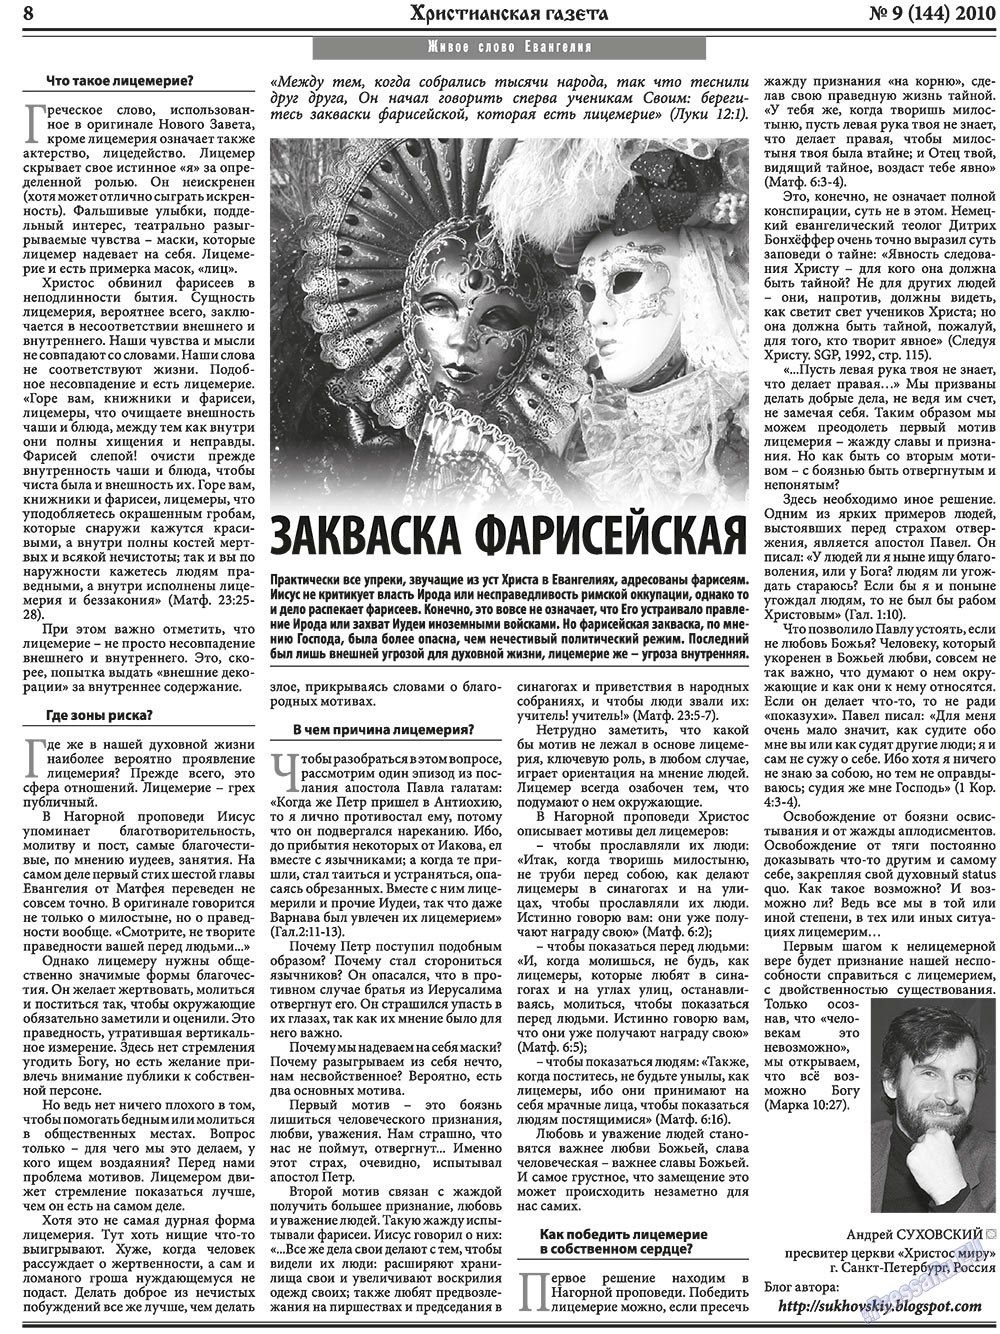 Христианская газета, газета. 2010 №9 стр.8